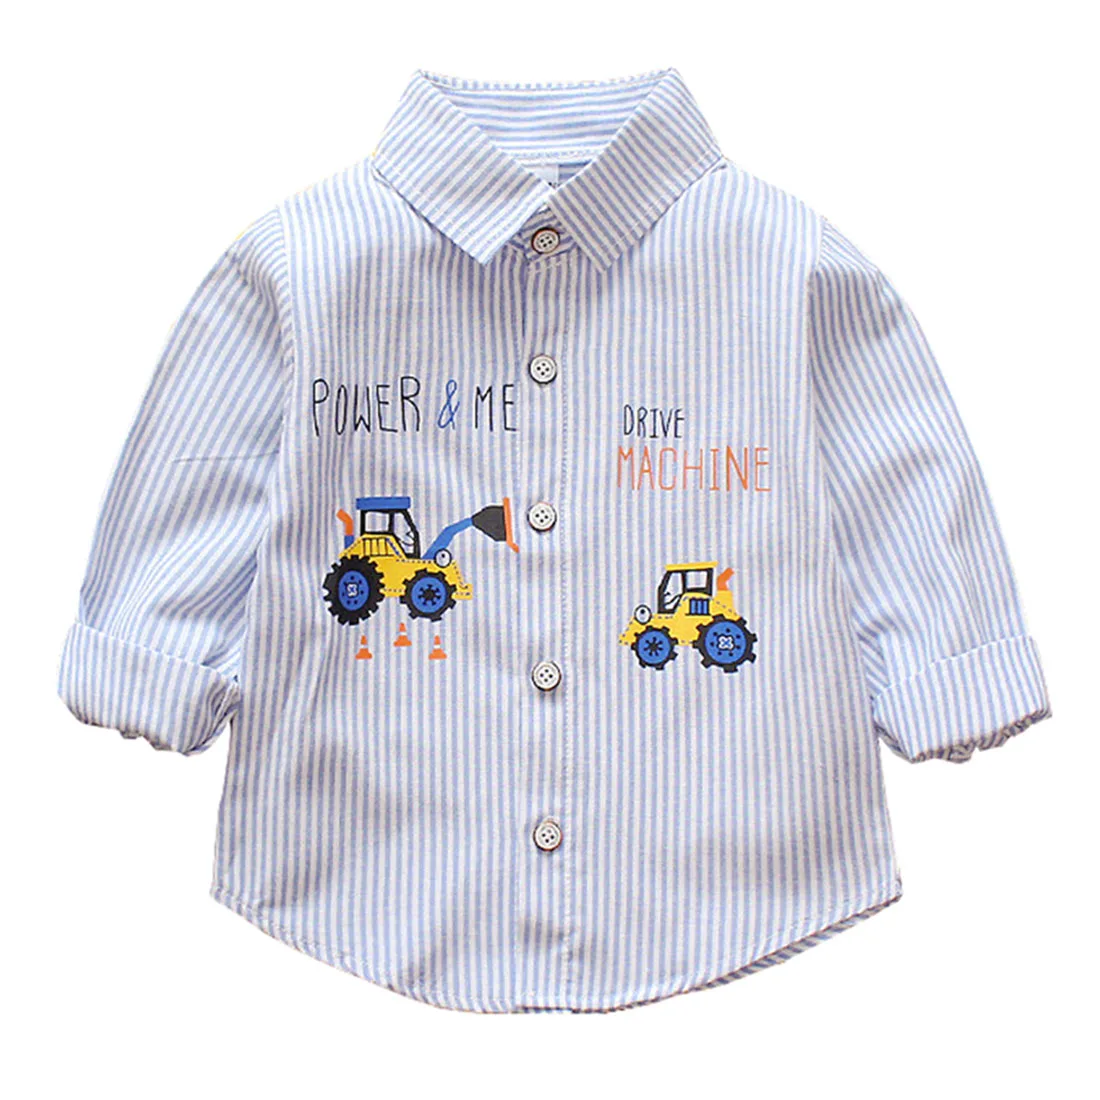 Повседневная футболка с длинными рукавами для маленьких мальчиков, подарок, футболка на пуговицах, блузка, рубашка, топы в полоску с принтом экскаватора